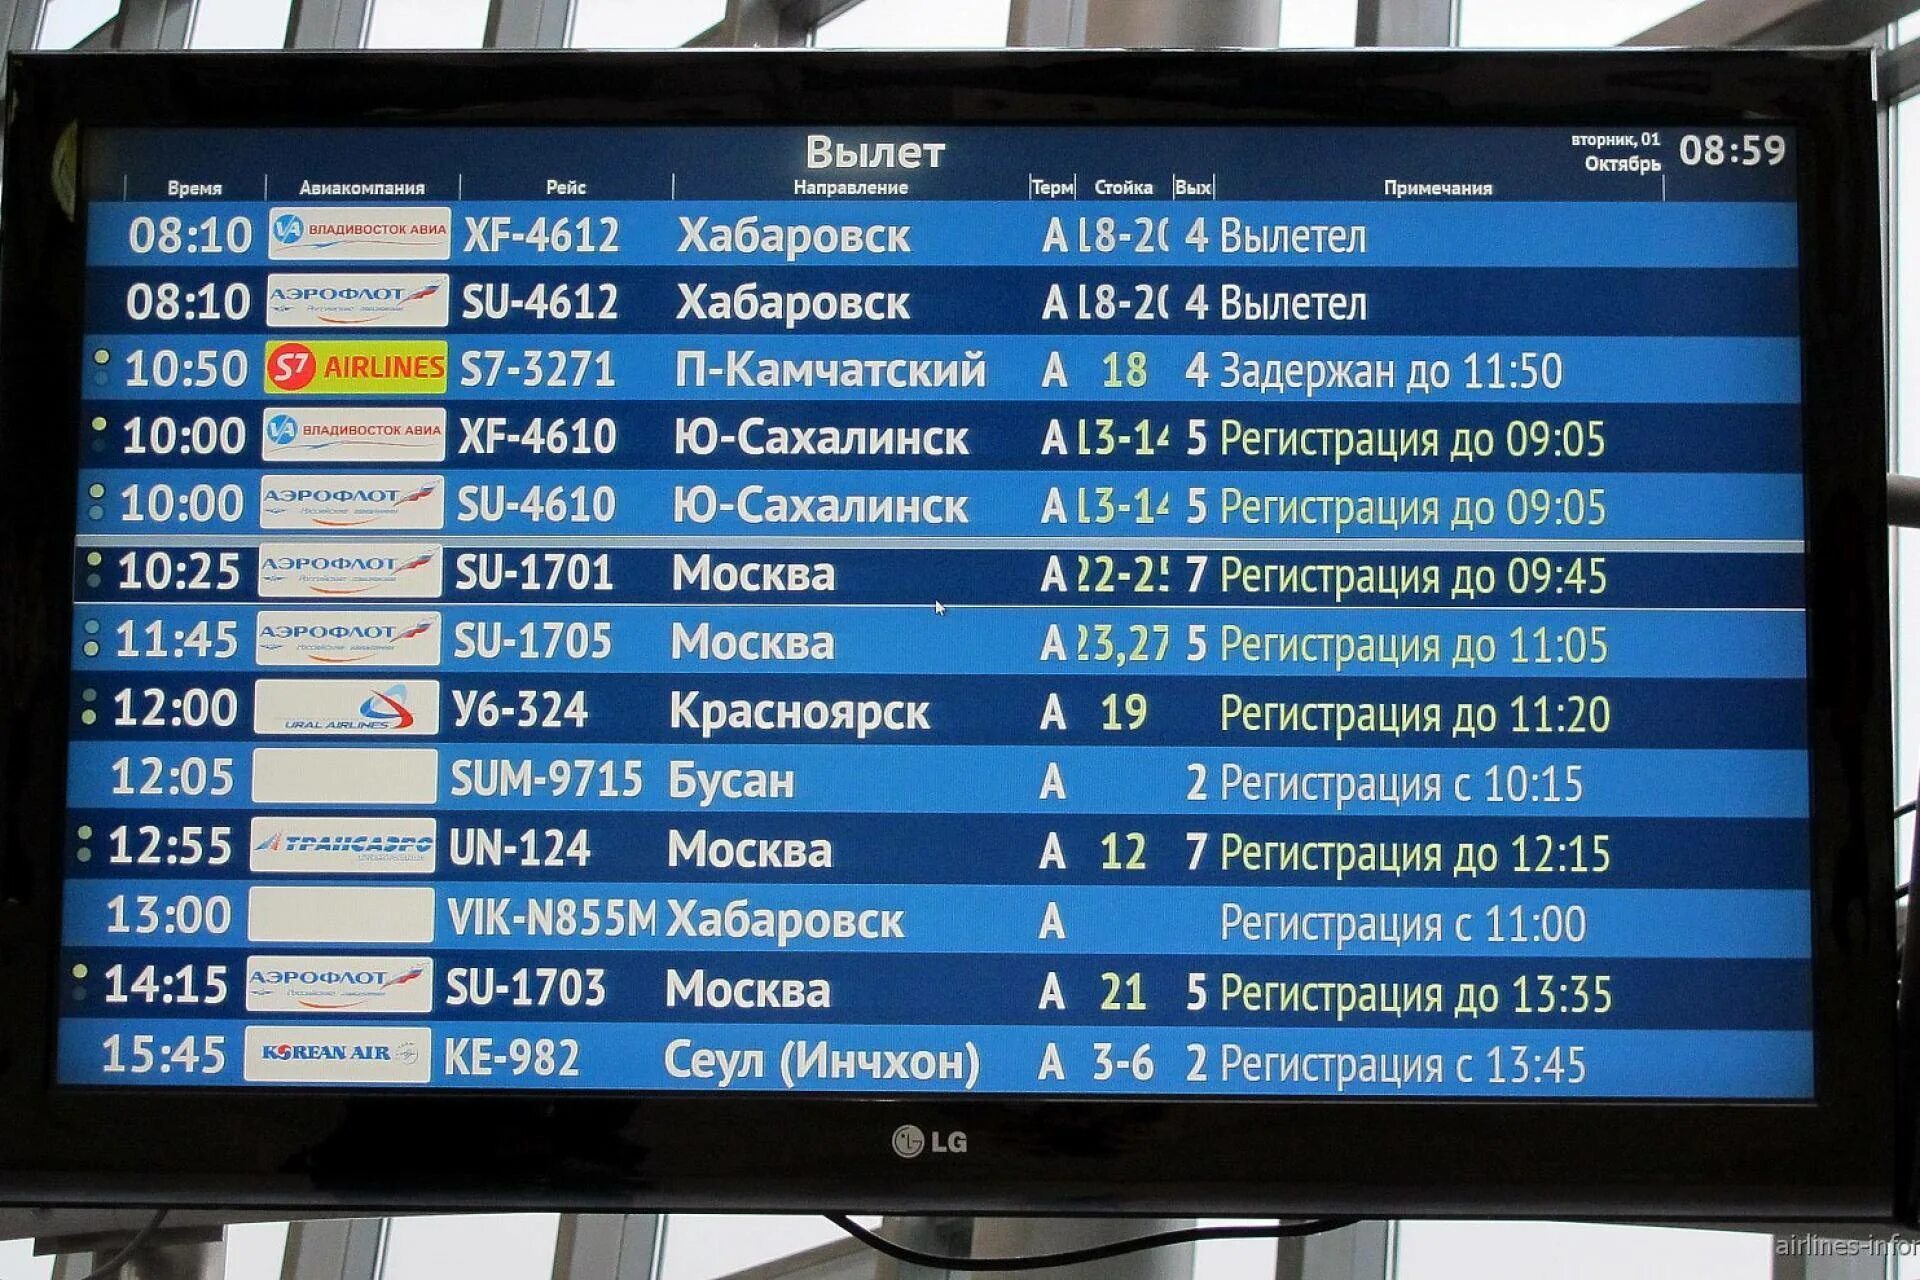 Аэропорта домодедово вылет сегодня из москвы. Табло аэропорта. Табло рейсов в аэропорту. Аэропорт Домодедово табло. Аэропорт табло вылета.